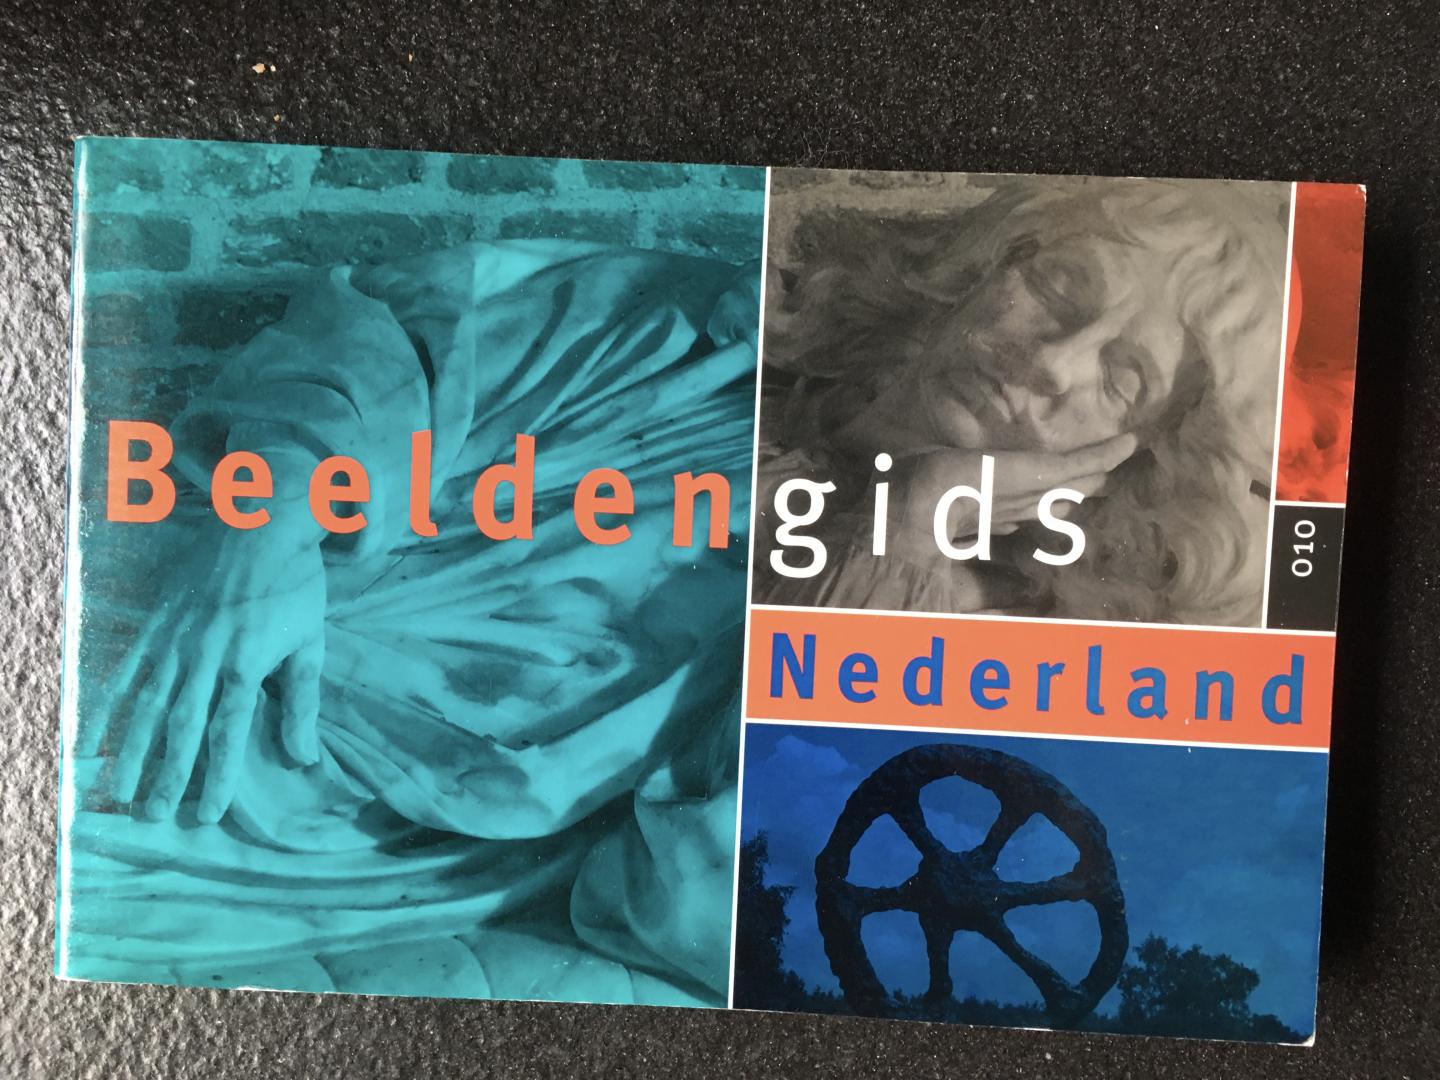 Beerman - Beeldengids Nederland / druk 1